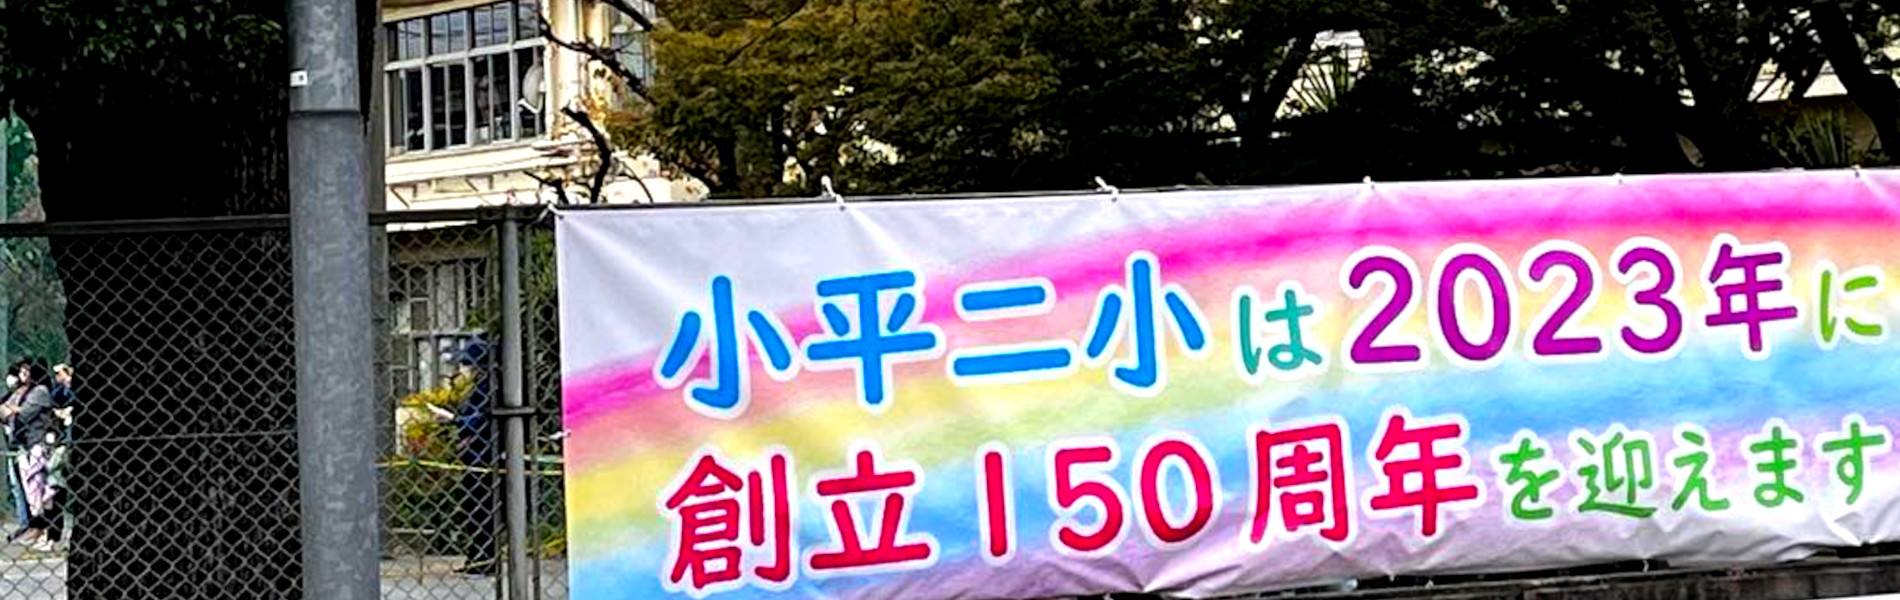 小平第二小学校創立150周年横断幕